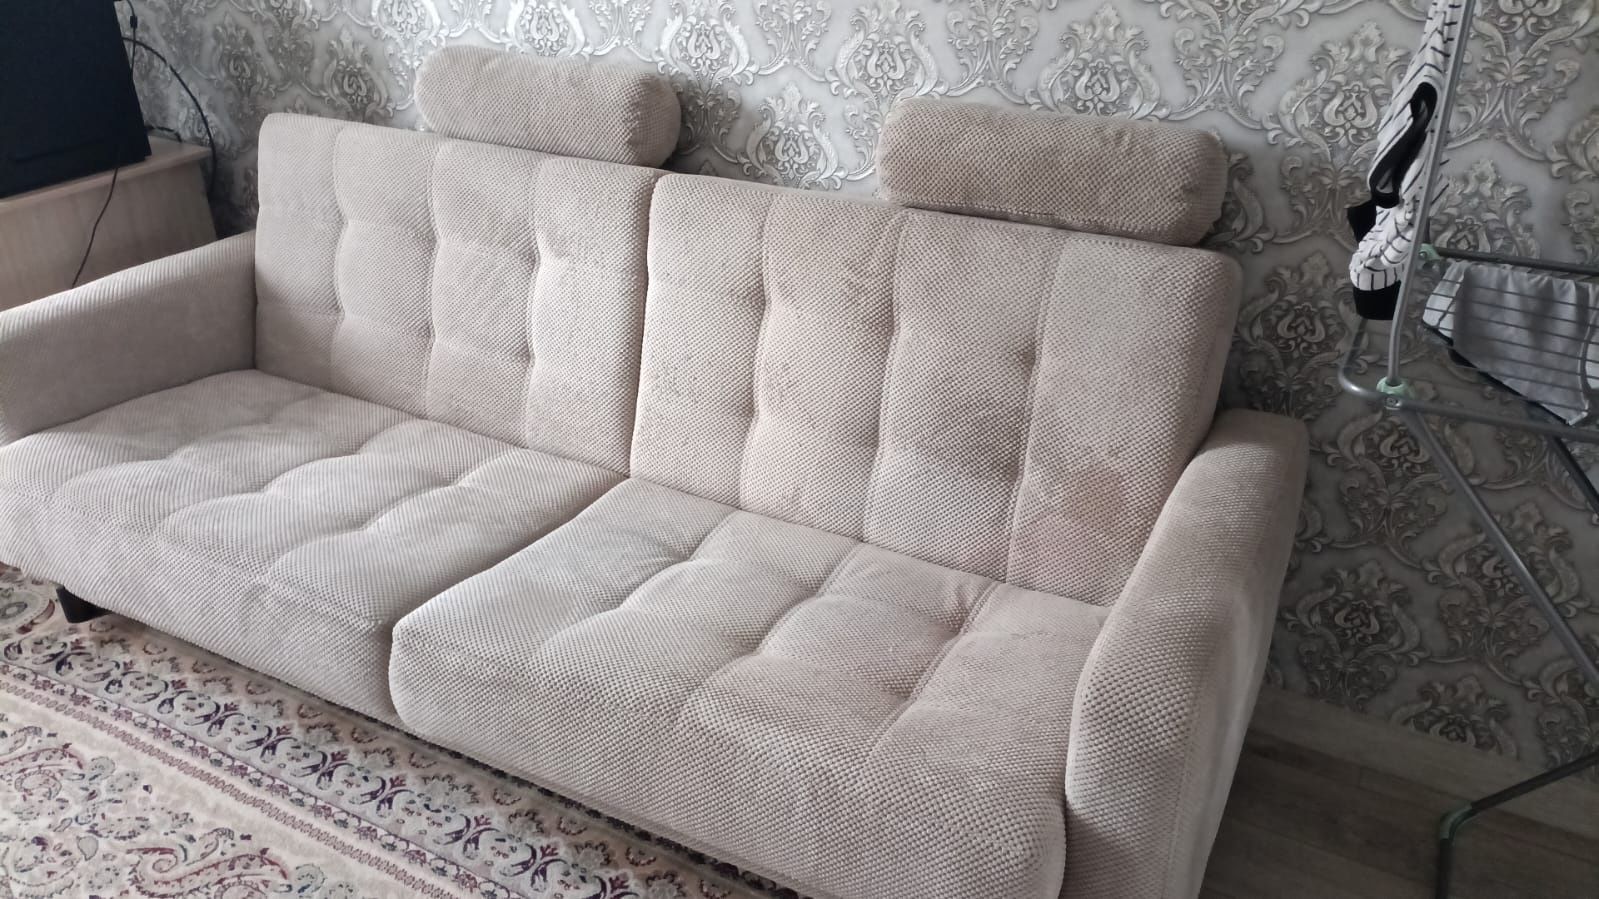 Продам диван производства Беларусия